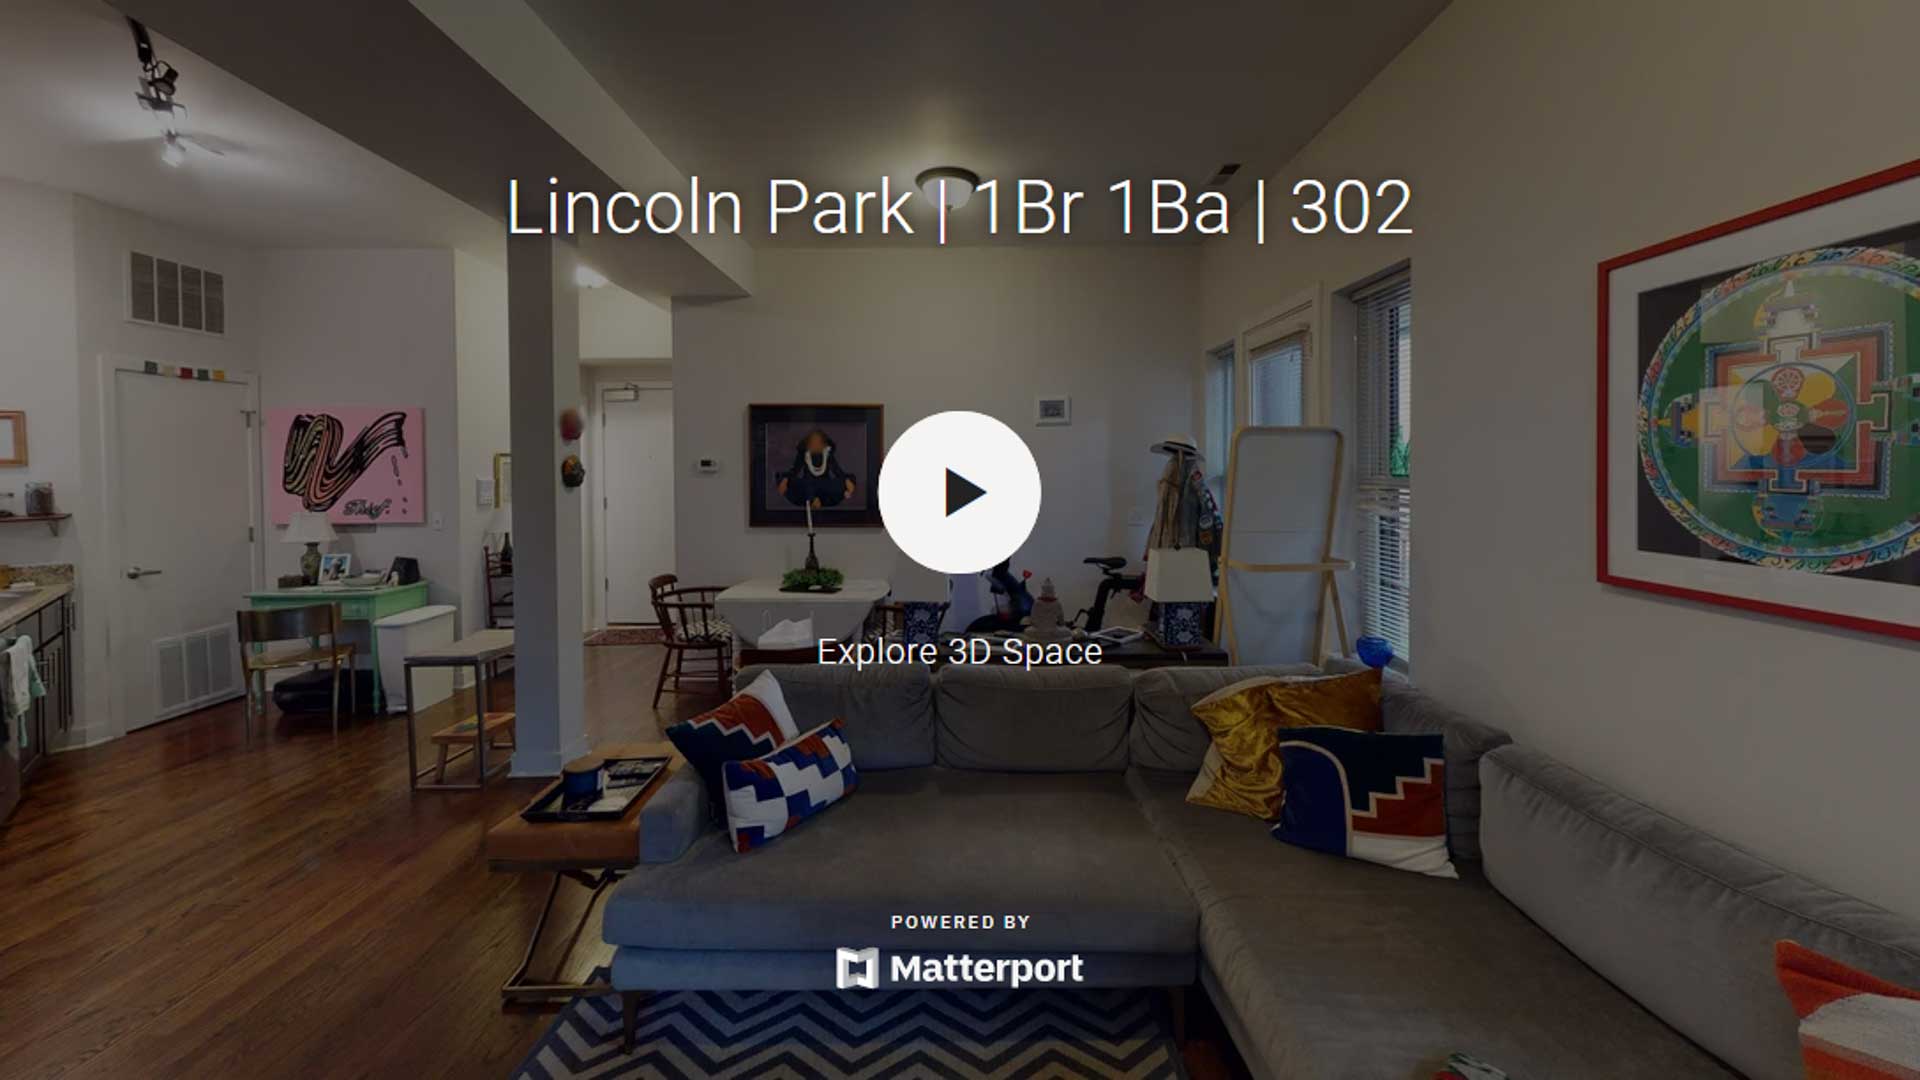 Lincoln Park | 1Br 1Ba | 302